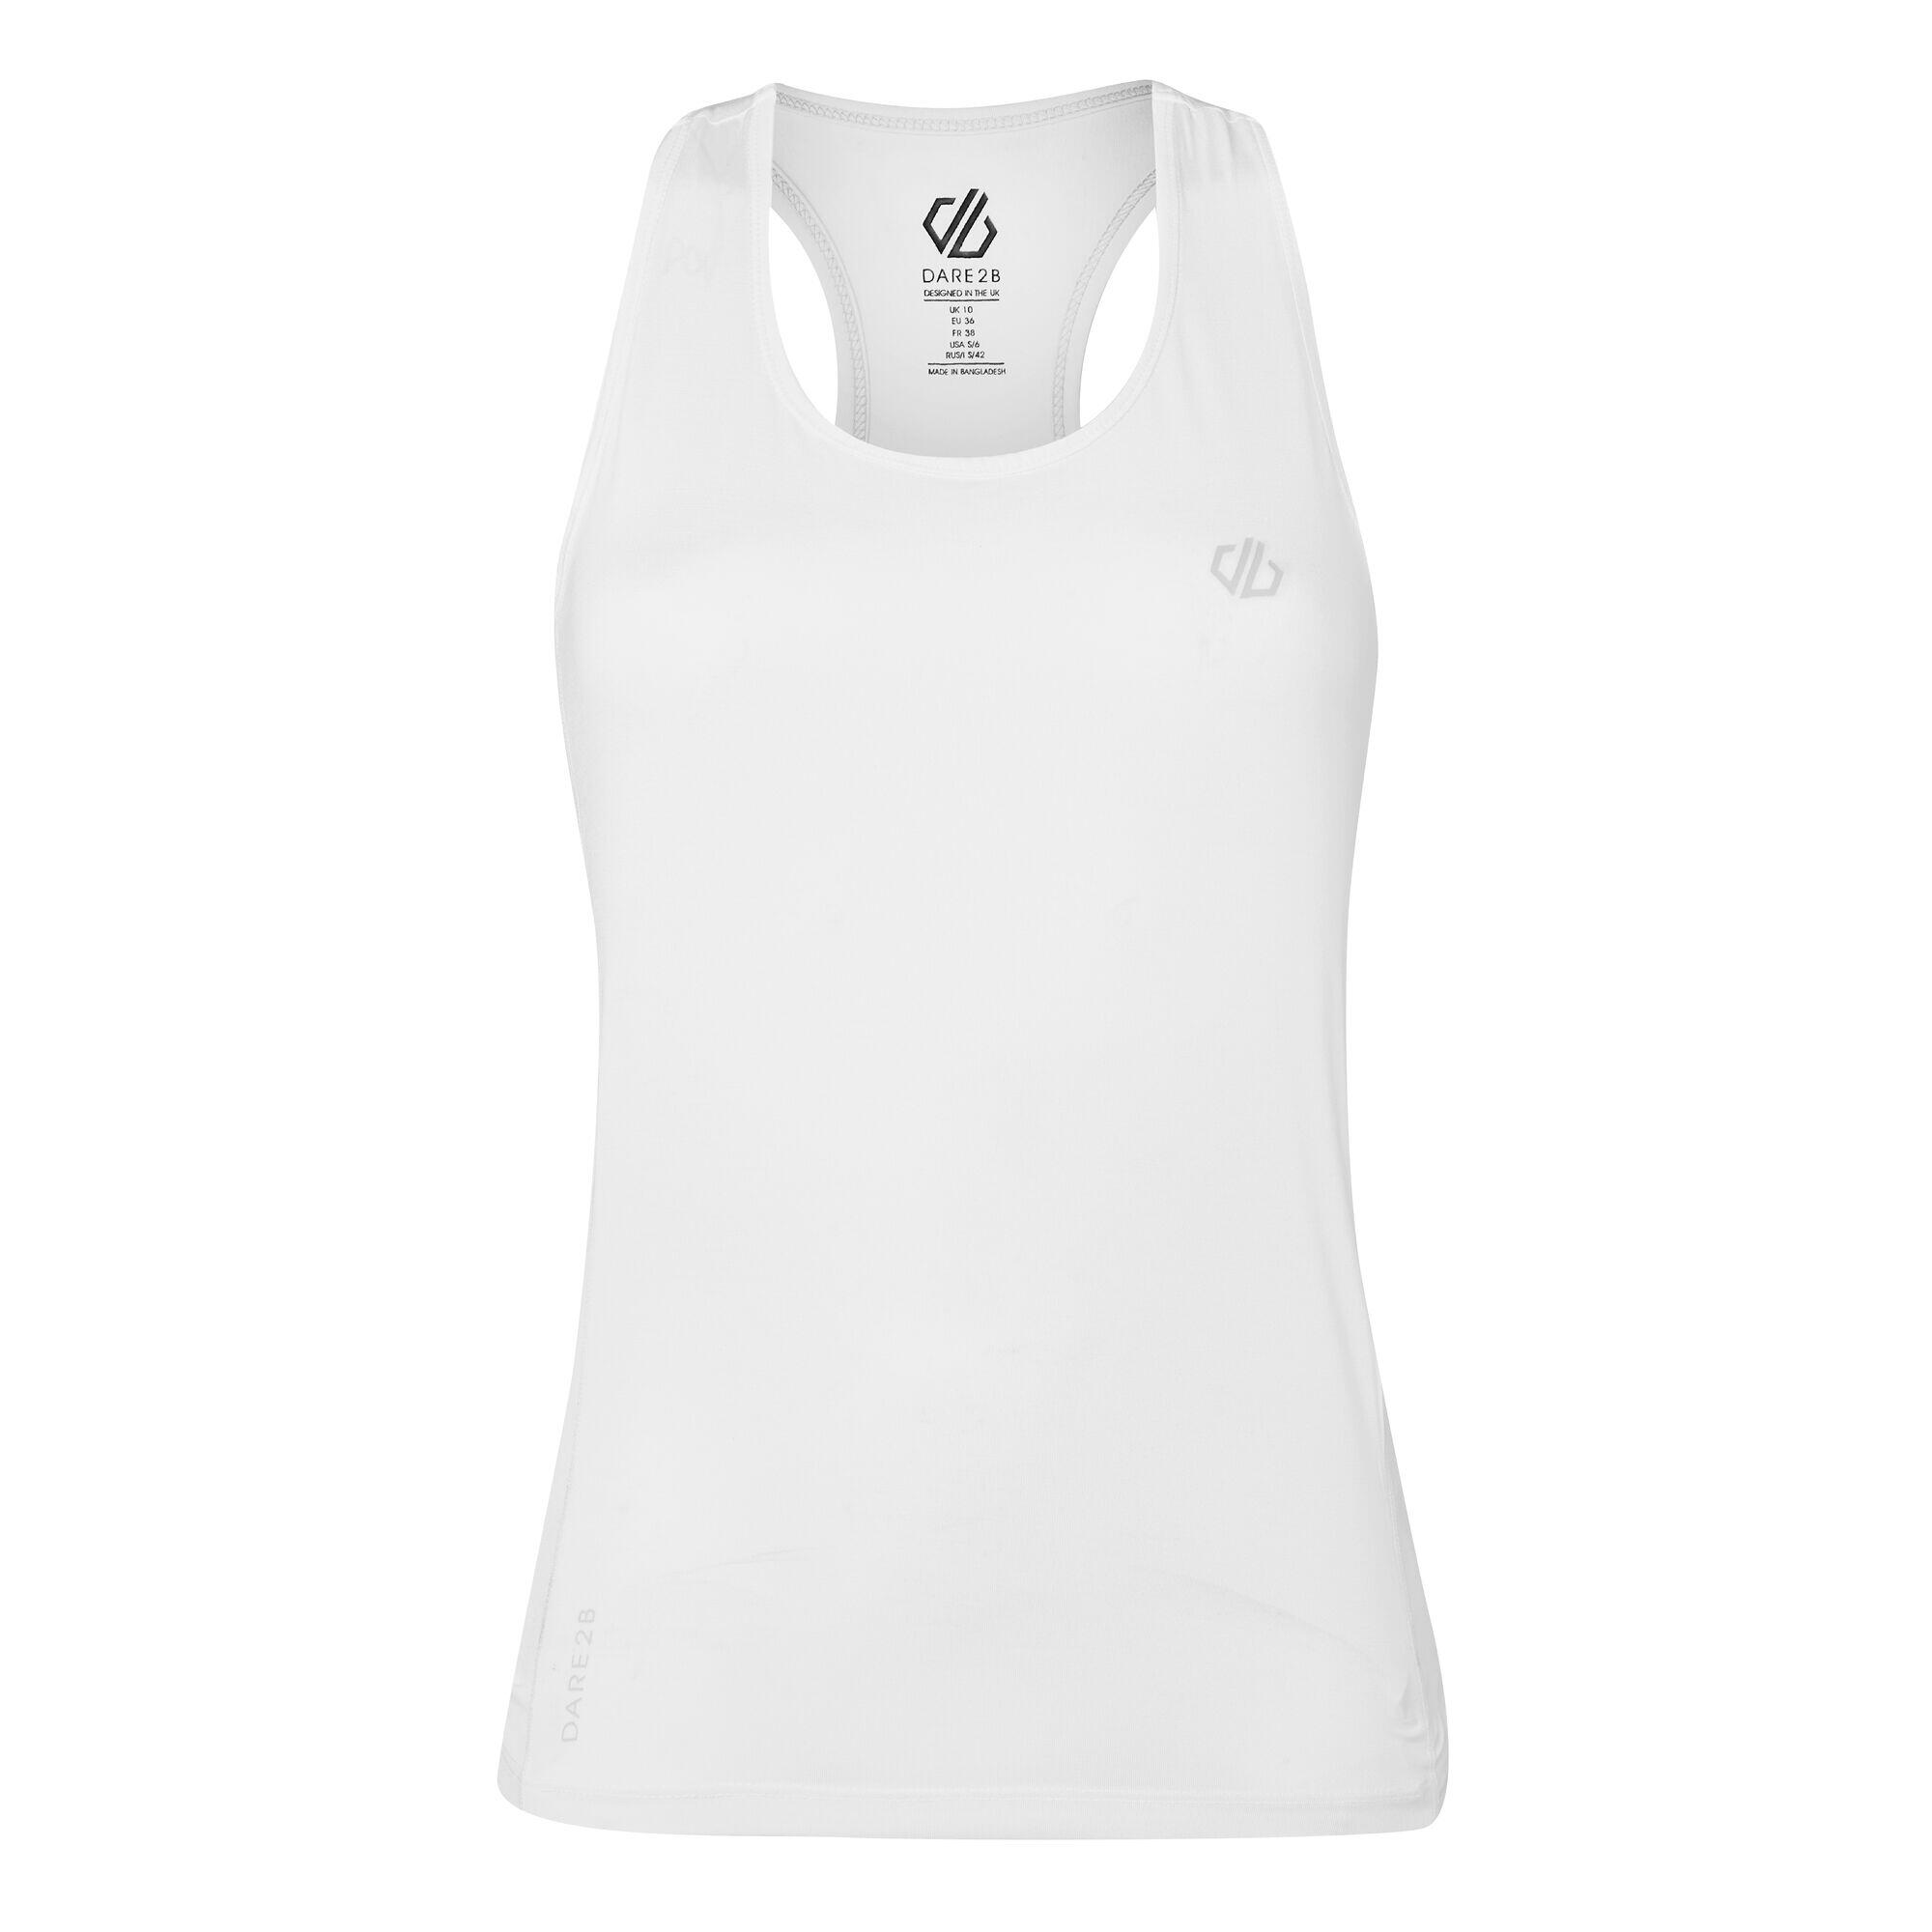 Modernize II Women's Fitness Sleeveless Vest - White 4/5